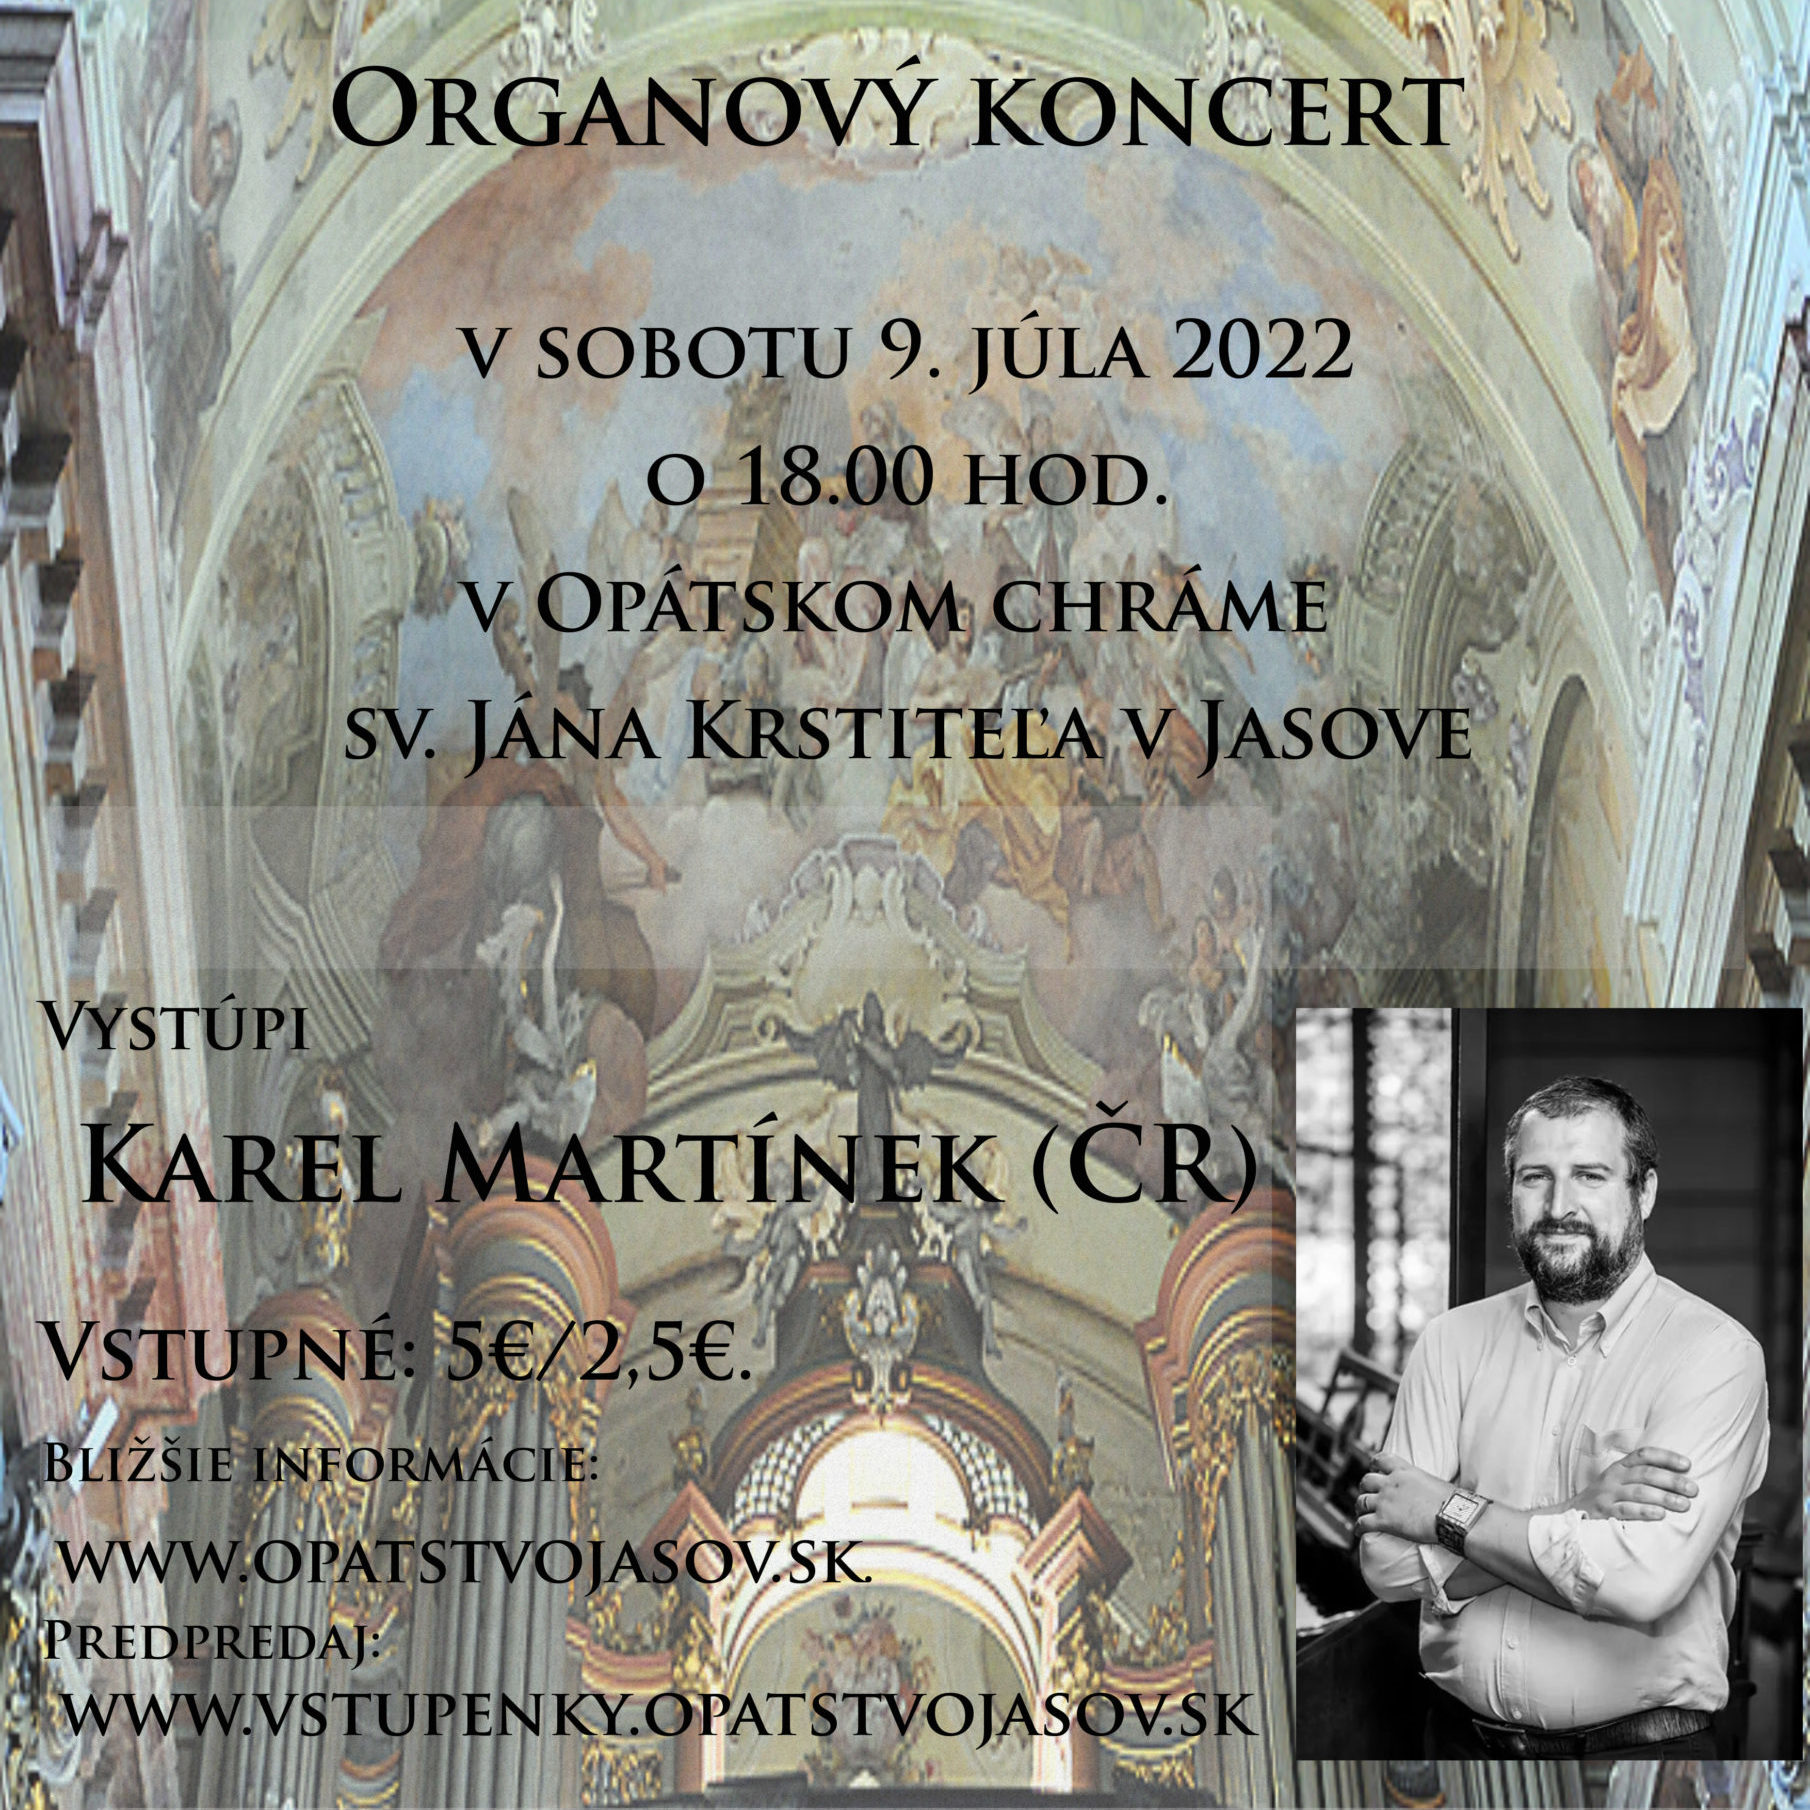 Organový koncert Karel Martínek